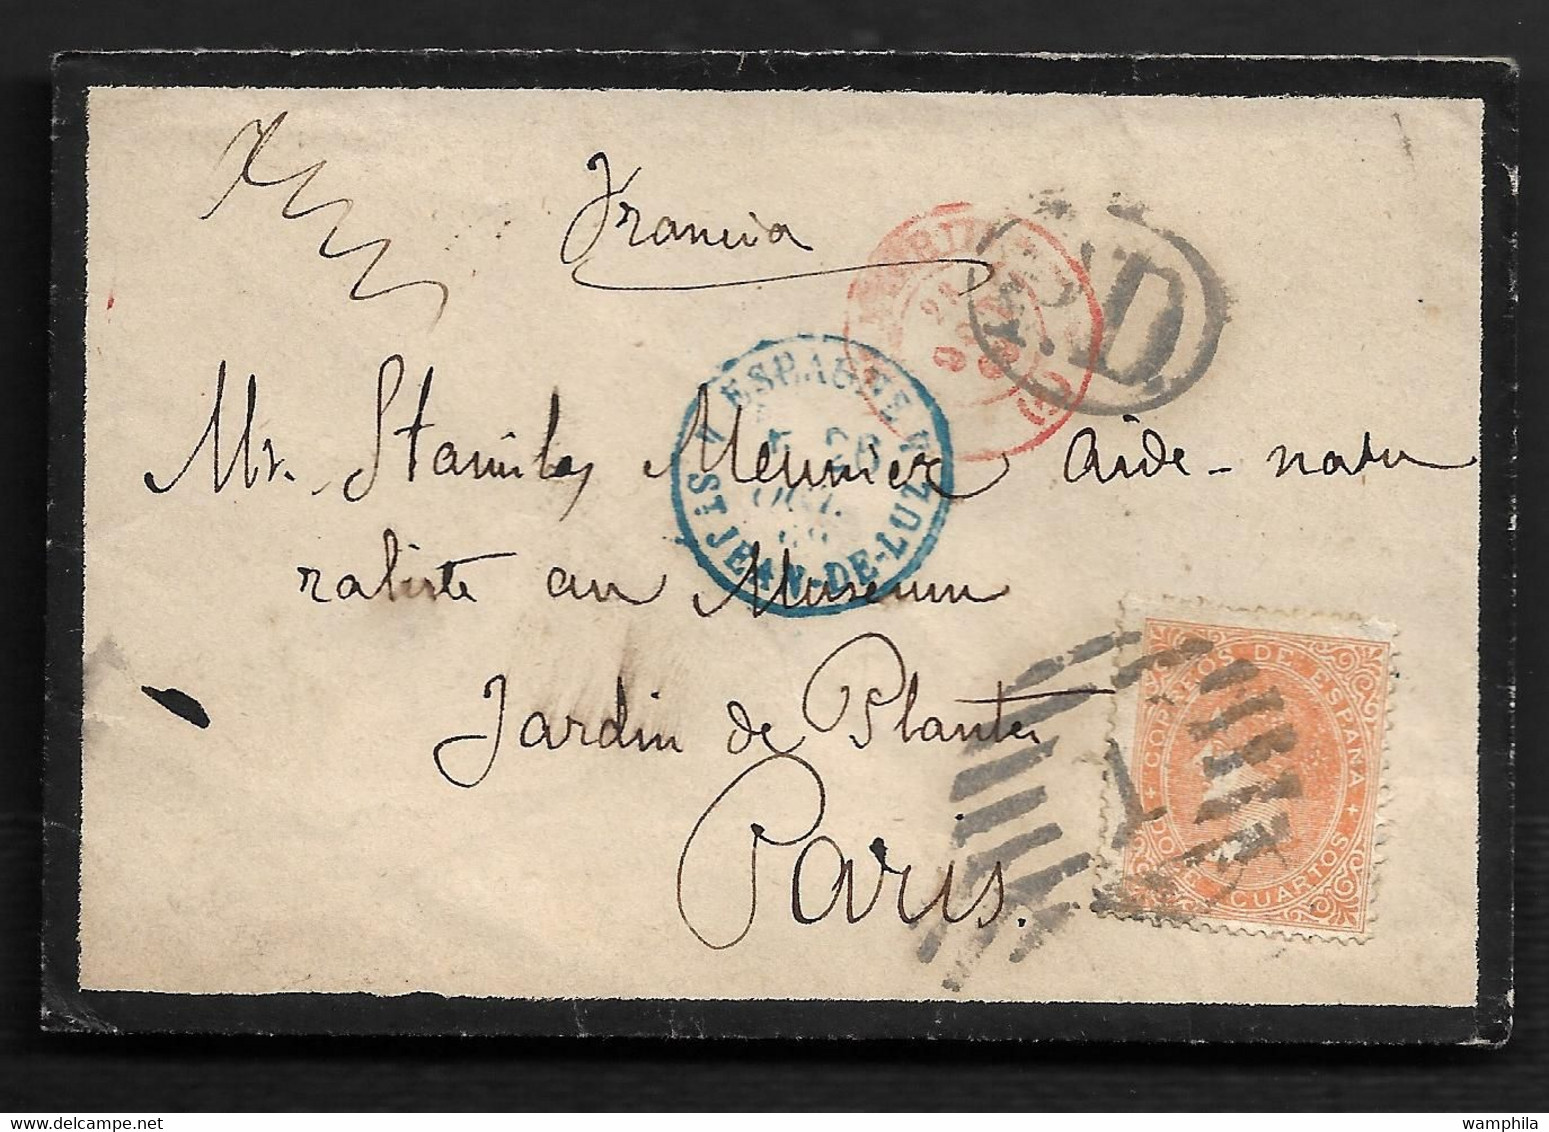 lot de 6 lettres d'Espagne pour la France entre 1867 et 1881 toutes scannées